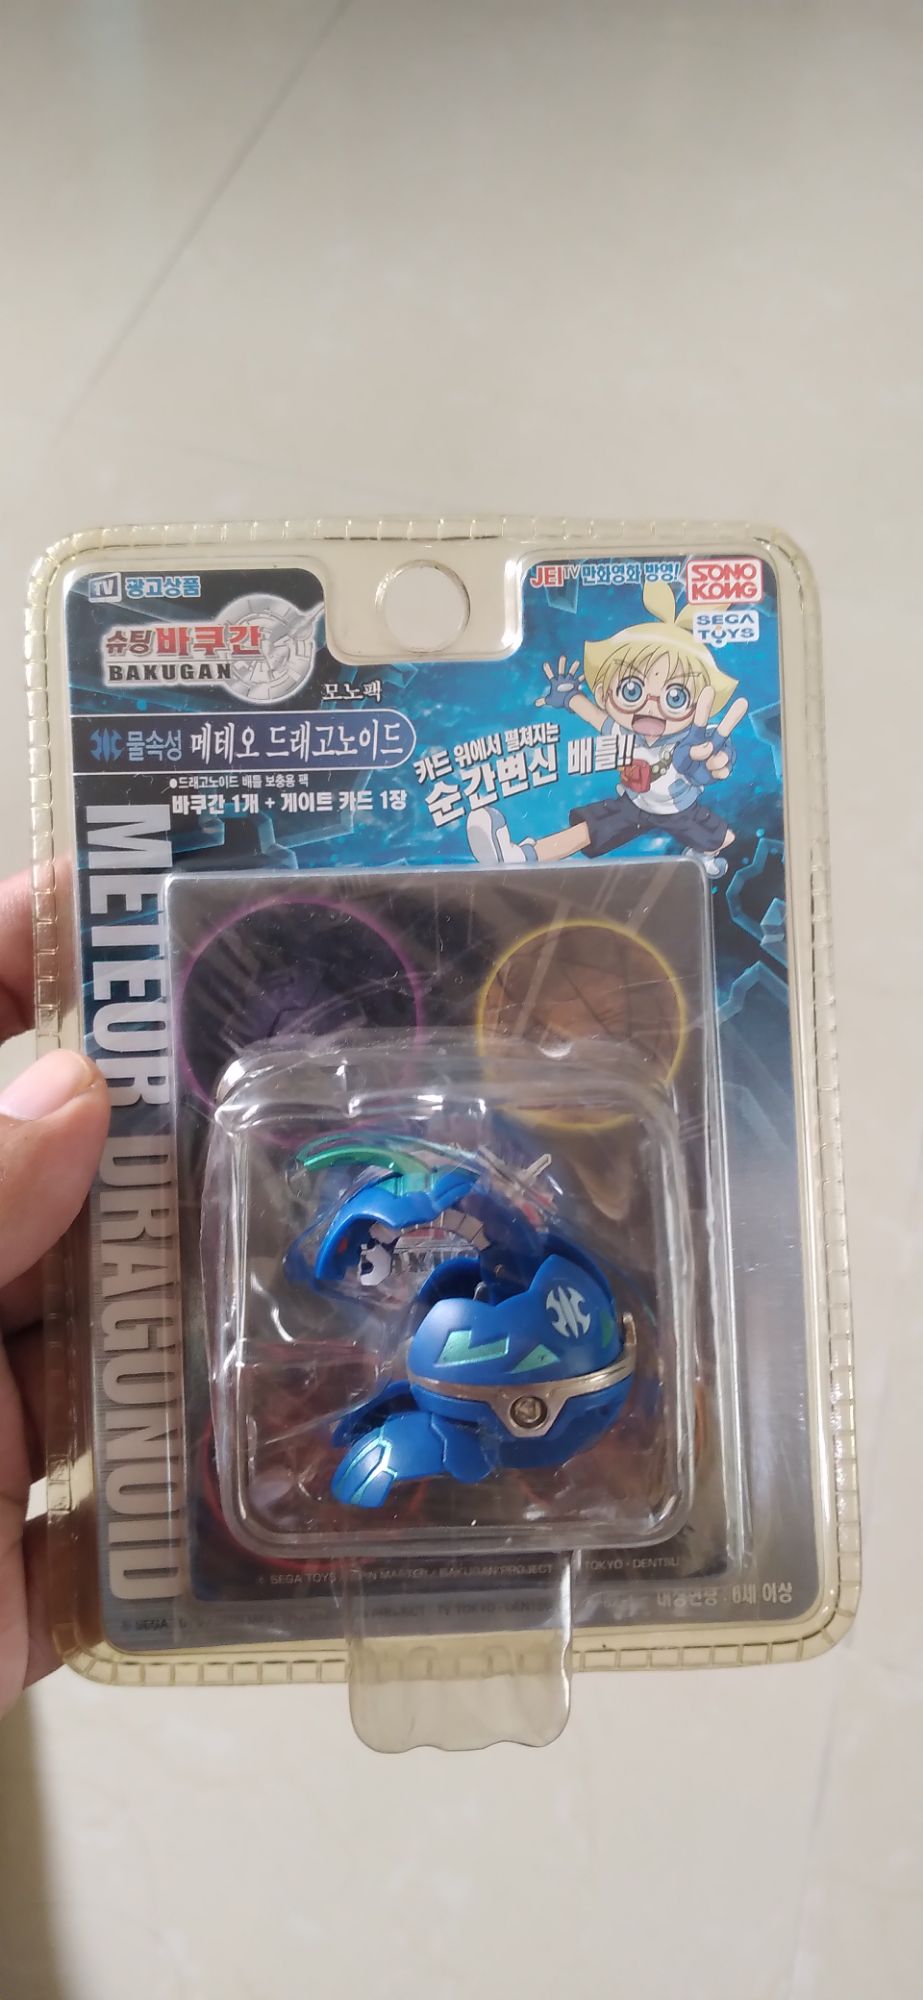 26468 Sega Toys Bakugan Mono pack ver.1.0 Dragonoid Earth attribute from JAPAN 